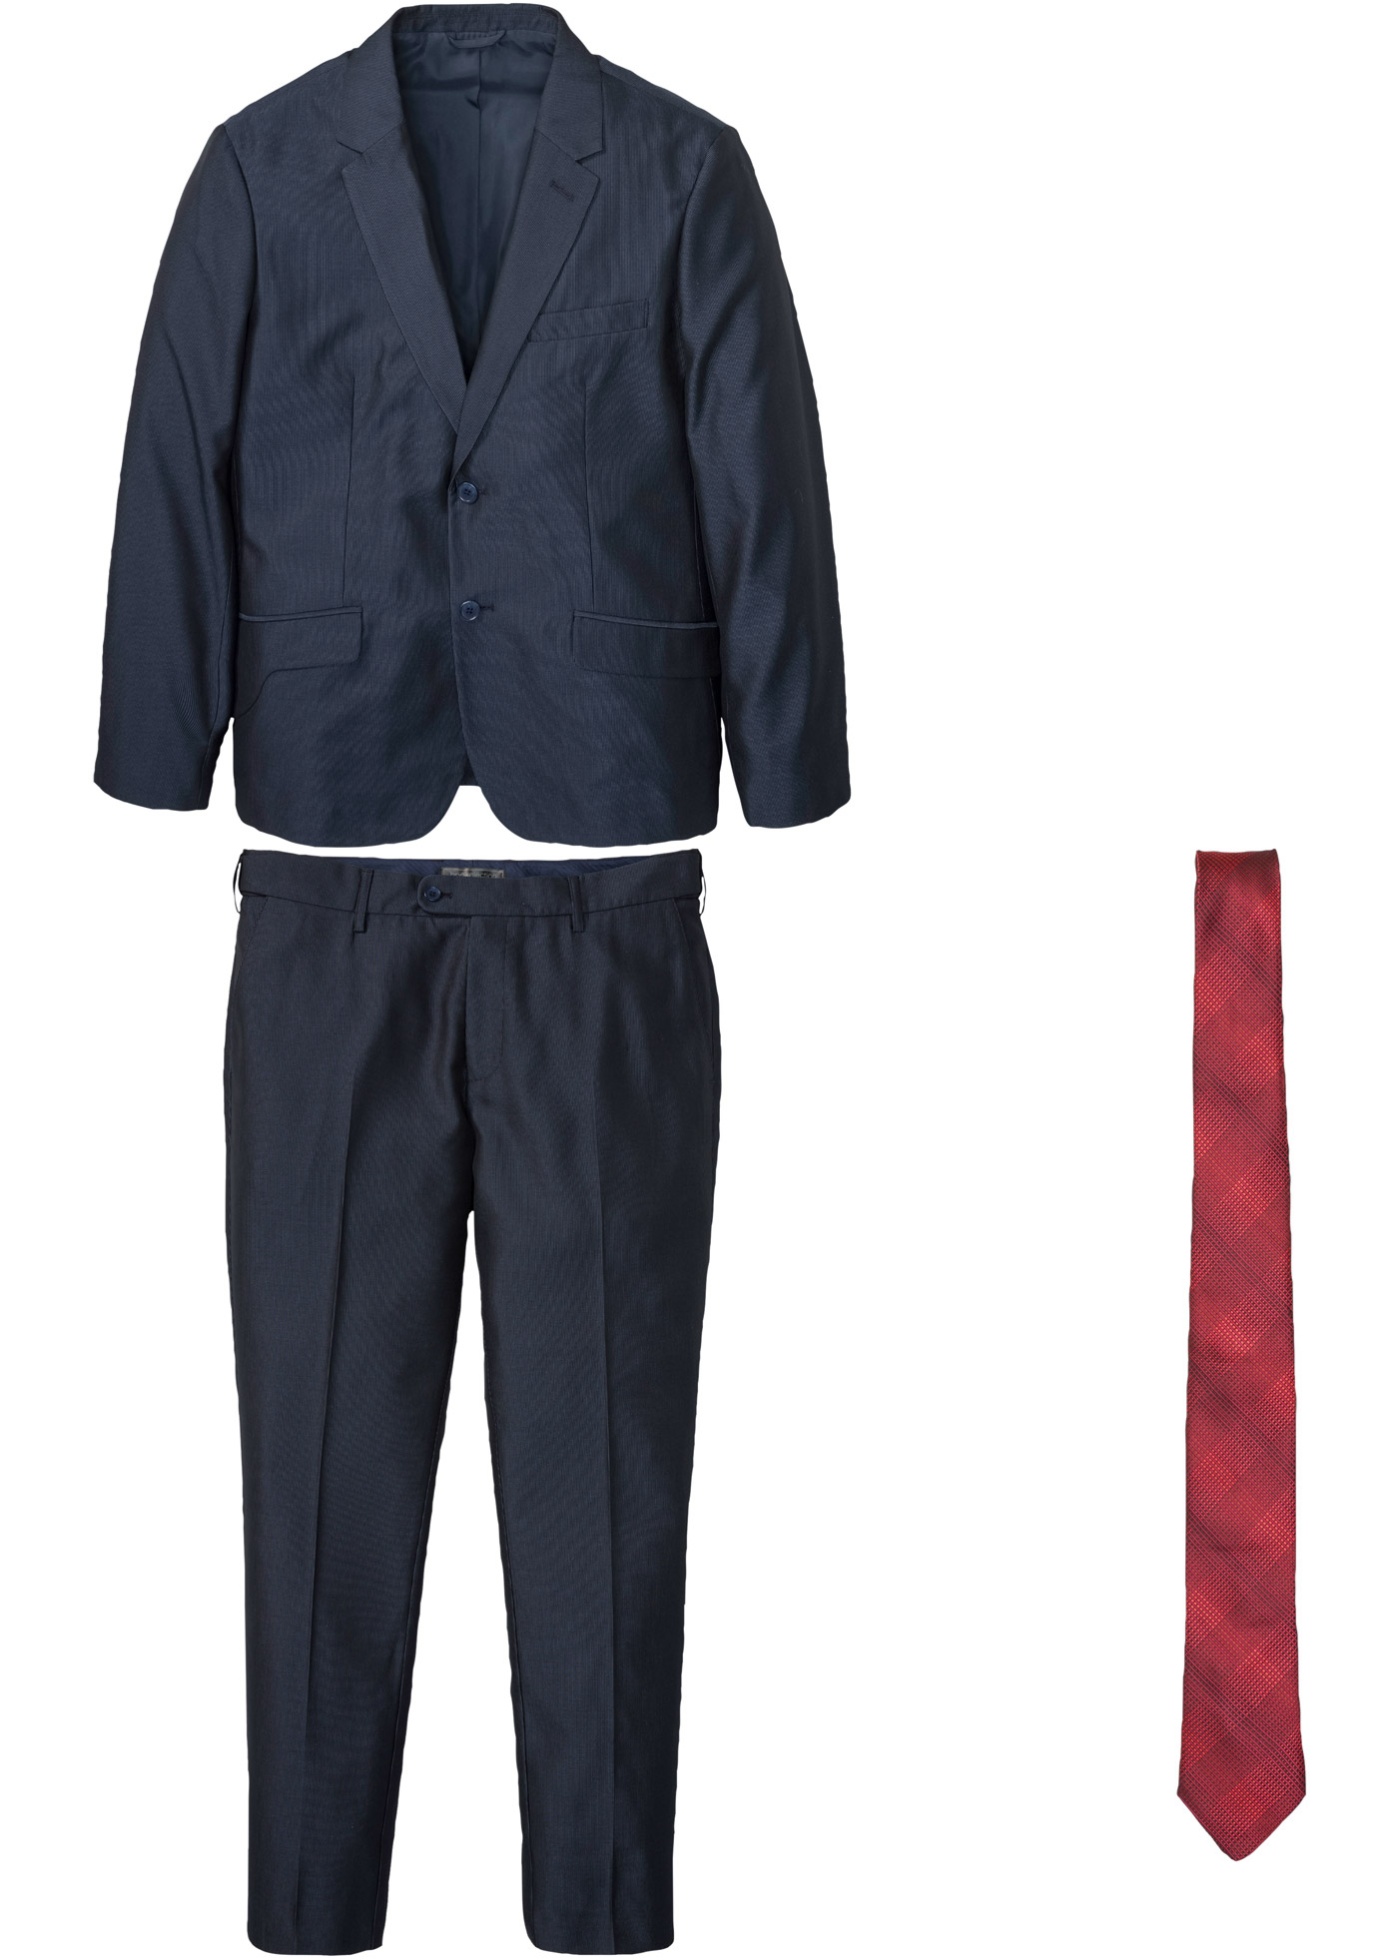 costume (ens. 3 pces.) : veste, pantalon, cravate